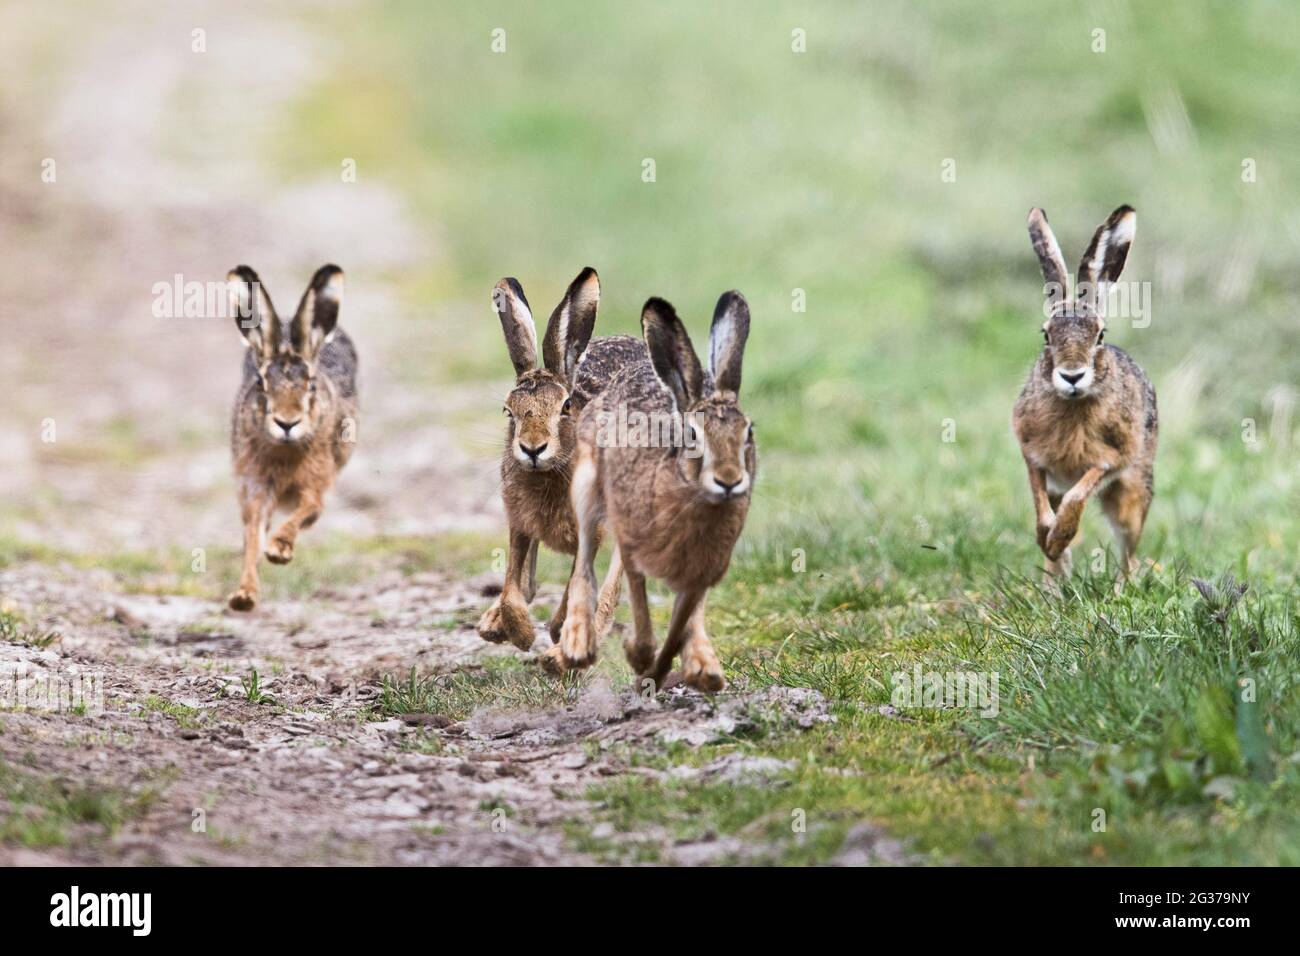 European hares (Lepus europaeus), chase, Emsland, Lower Saxony, Germany Stock Photo